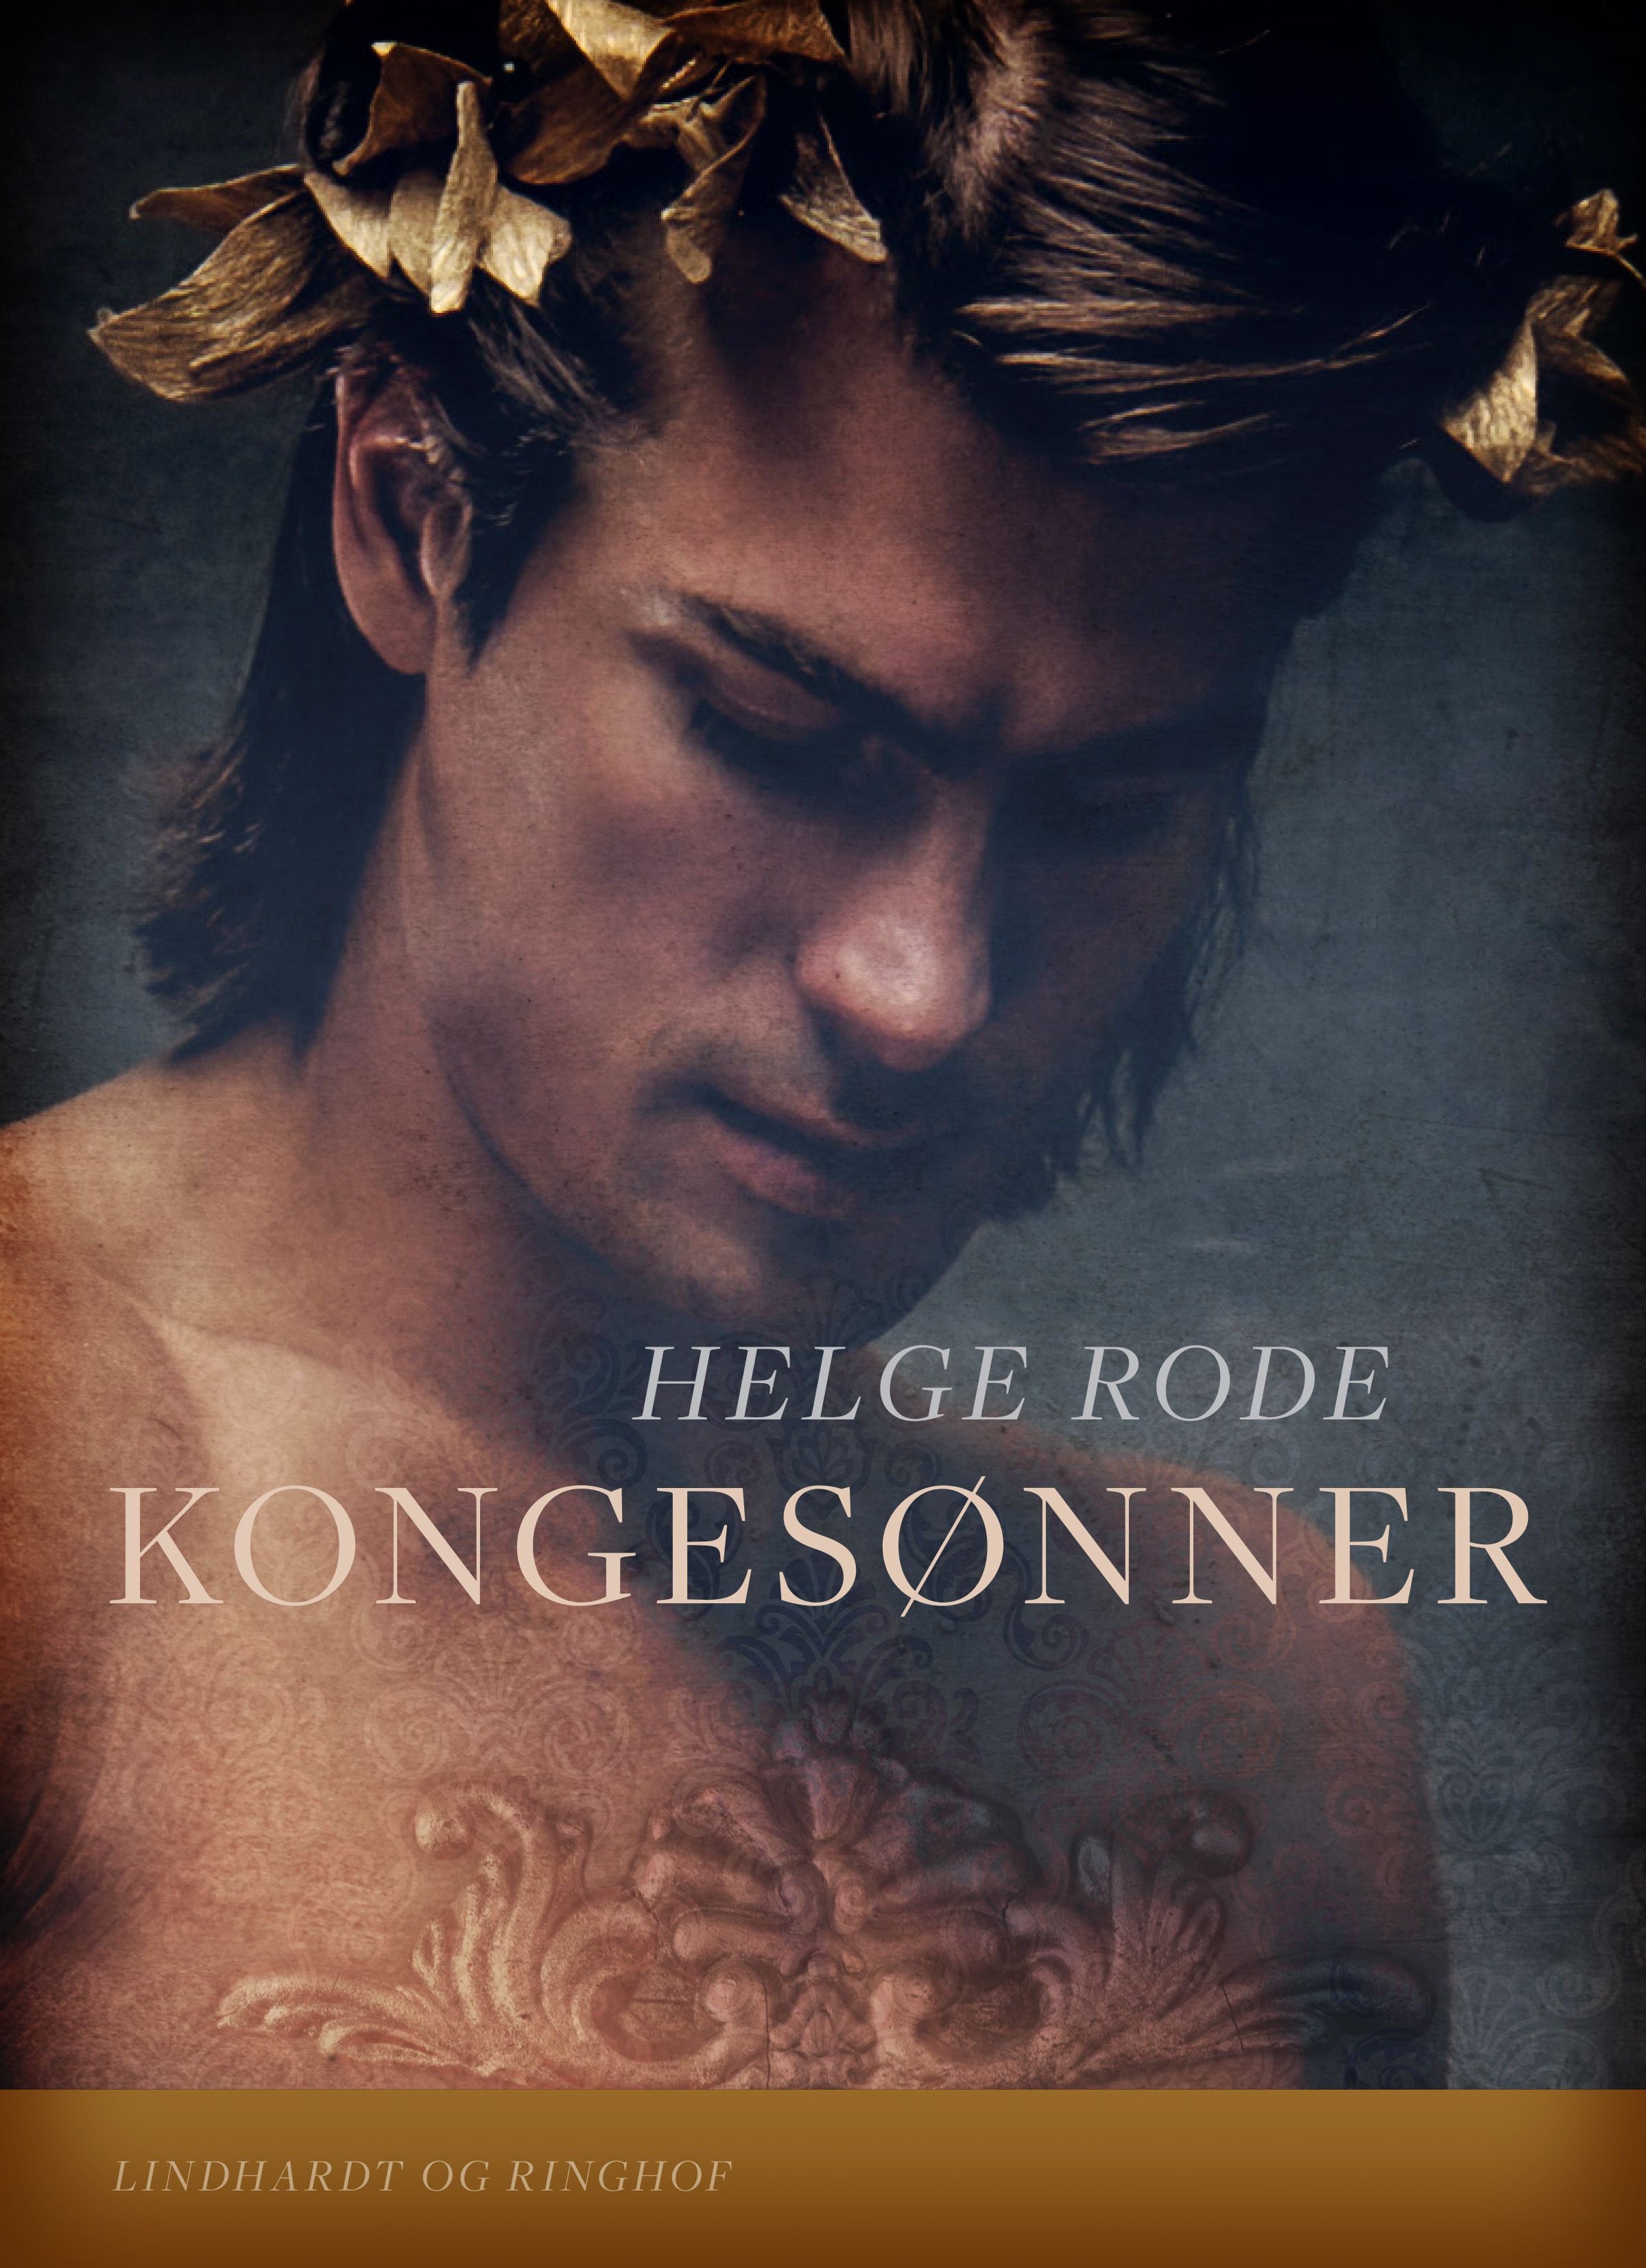 Kongesønner, e-bog af Helge Rode